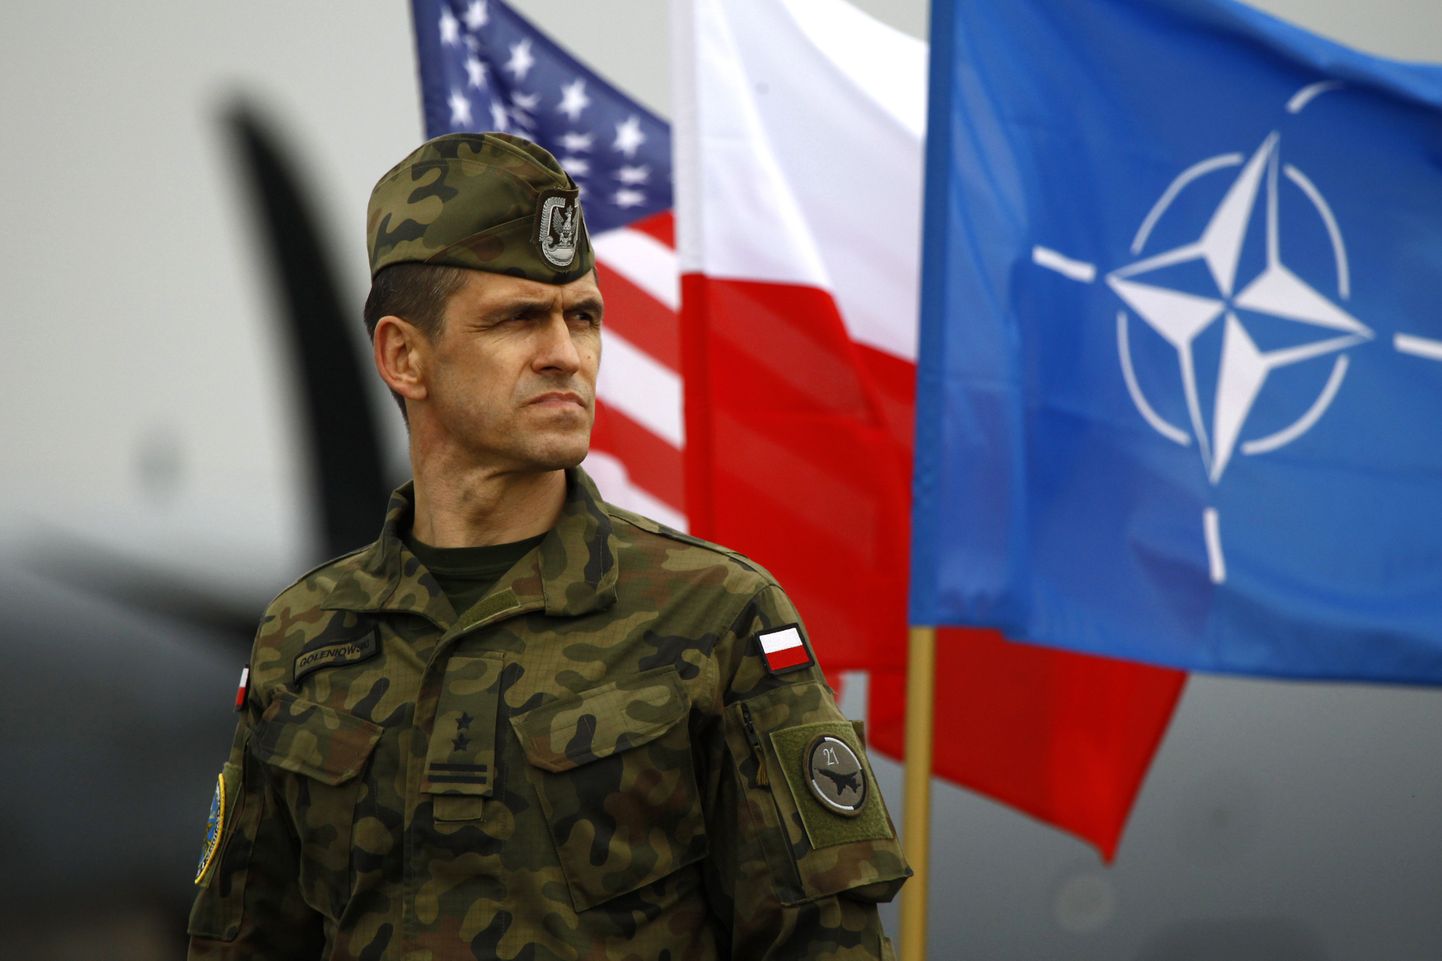 Poola sõduri selja taga on USA, Poola ja NATO lipud.